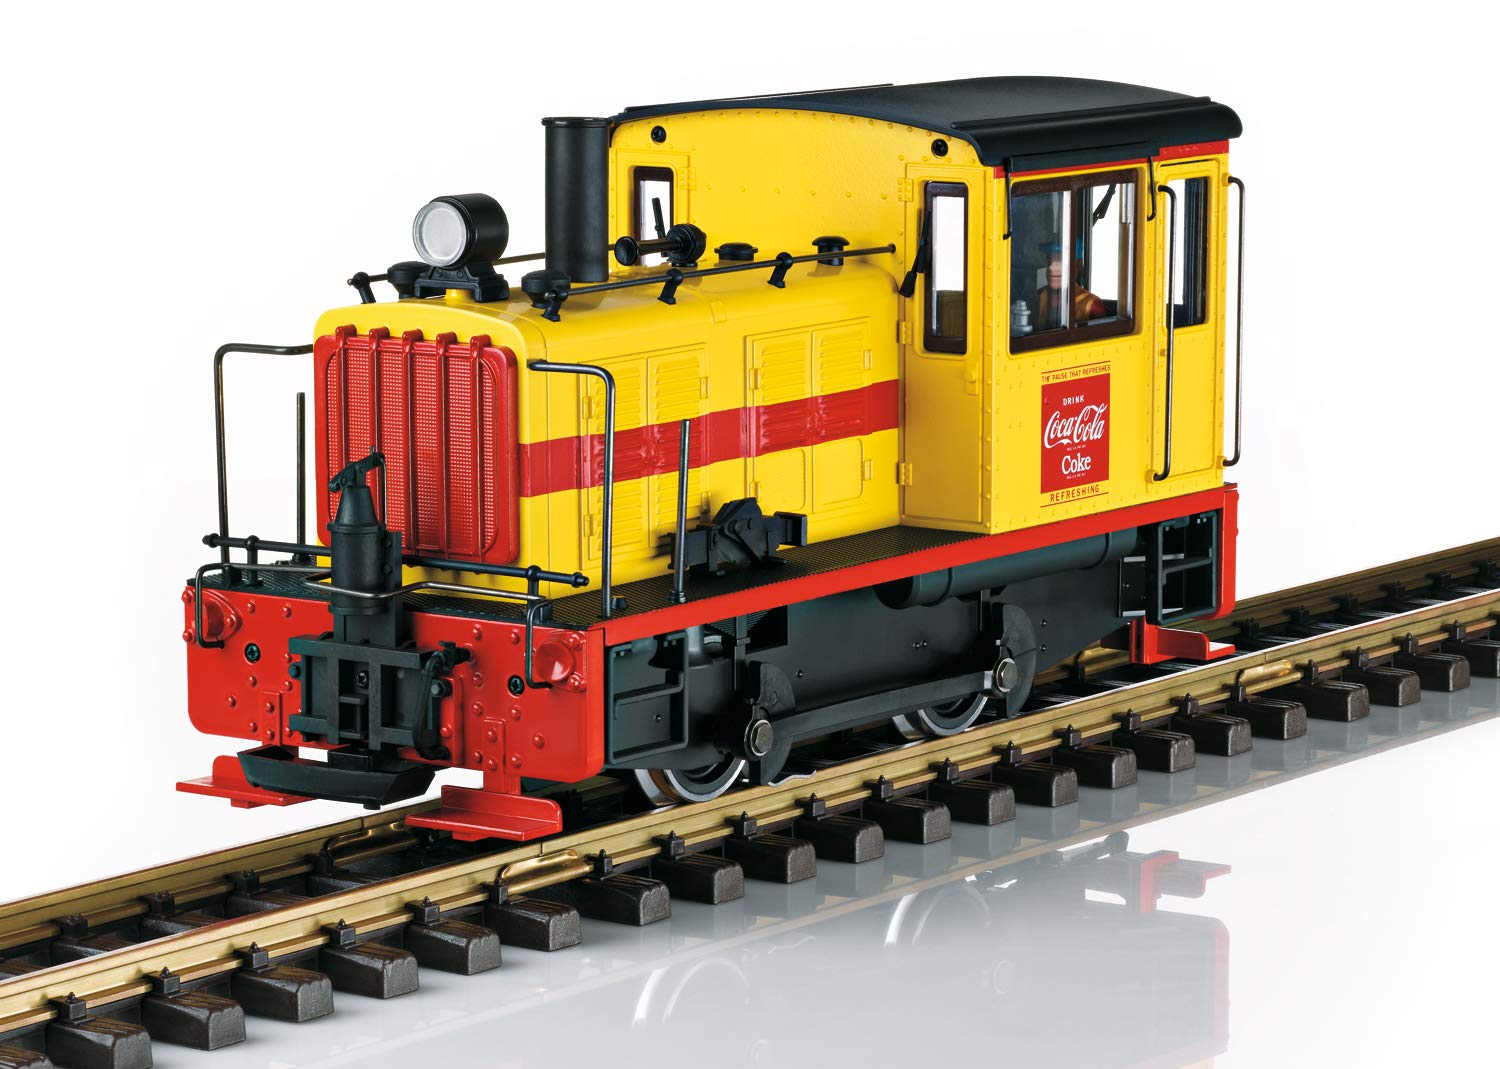 LGB 27631 – Gartenbahn Coca-Cola®, Rangierlok, Epoche III, mit Spitzenlicht, rot-gelbe Lok, Outdoor-Eisenbahn, Spur G